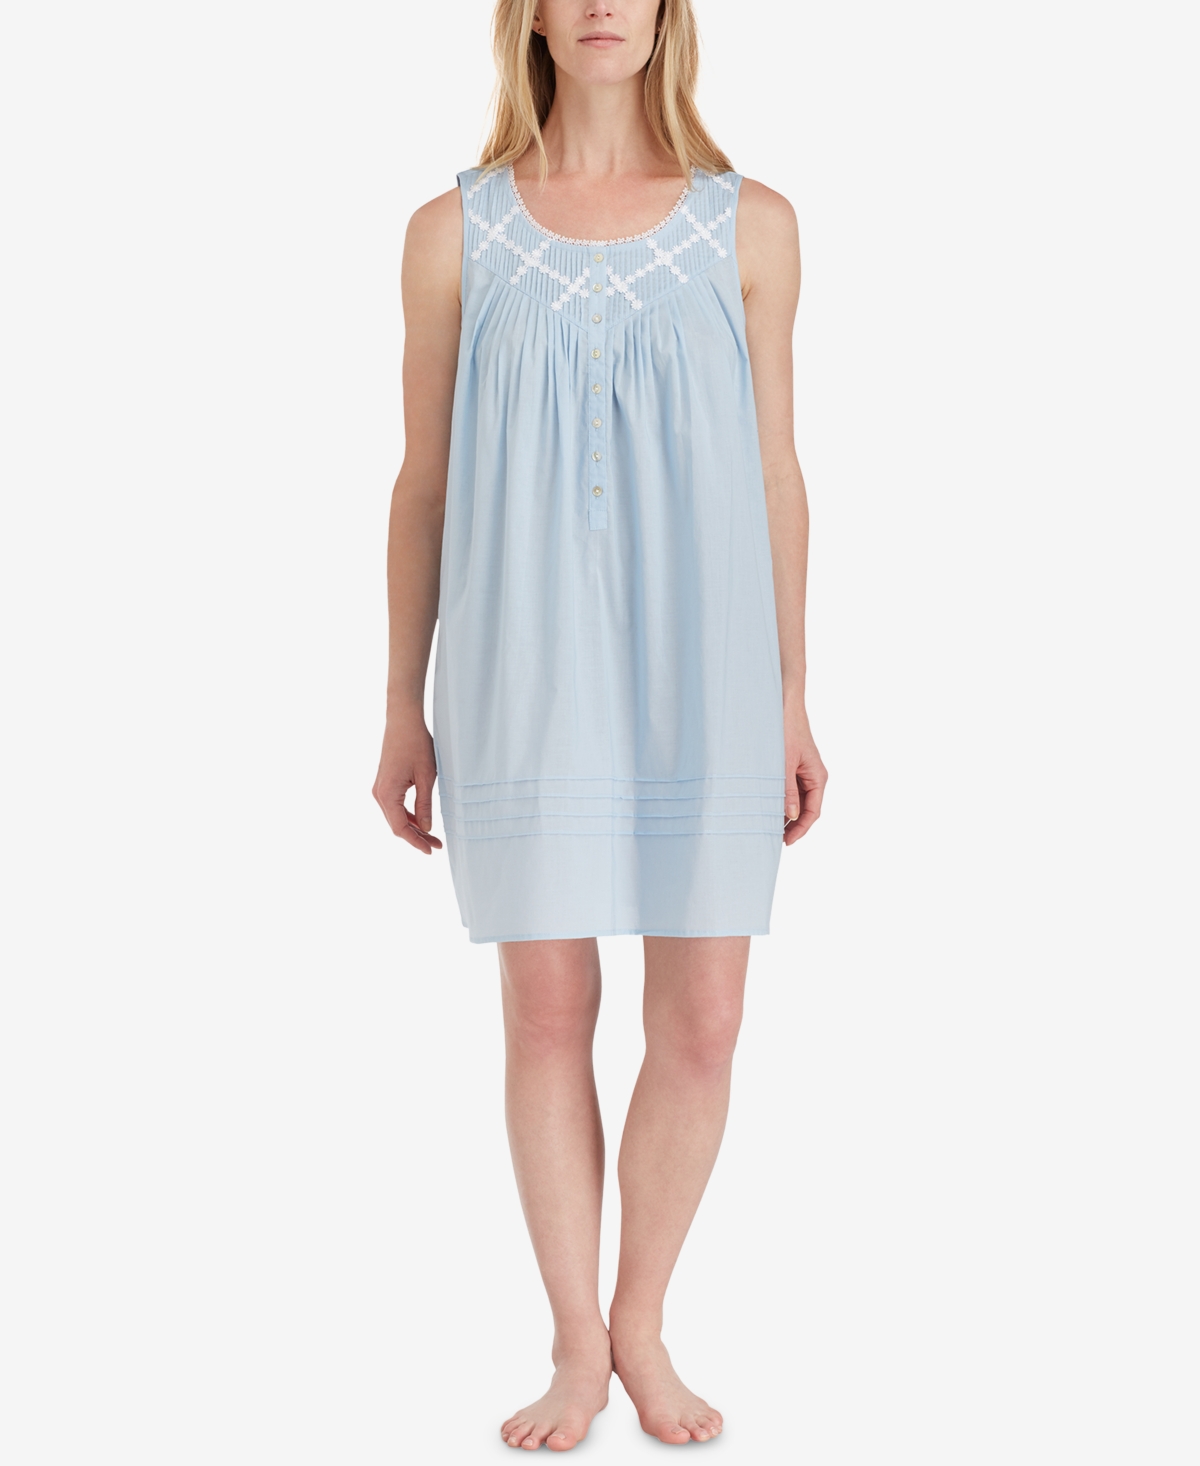 Cotton Lace-Trim Short Nightgown - Blue